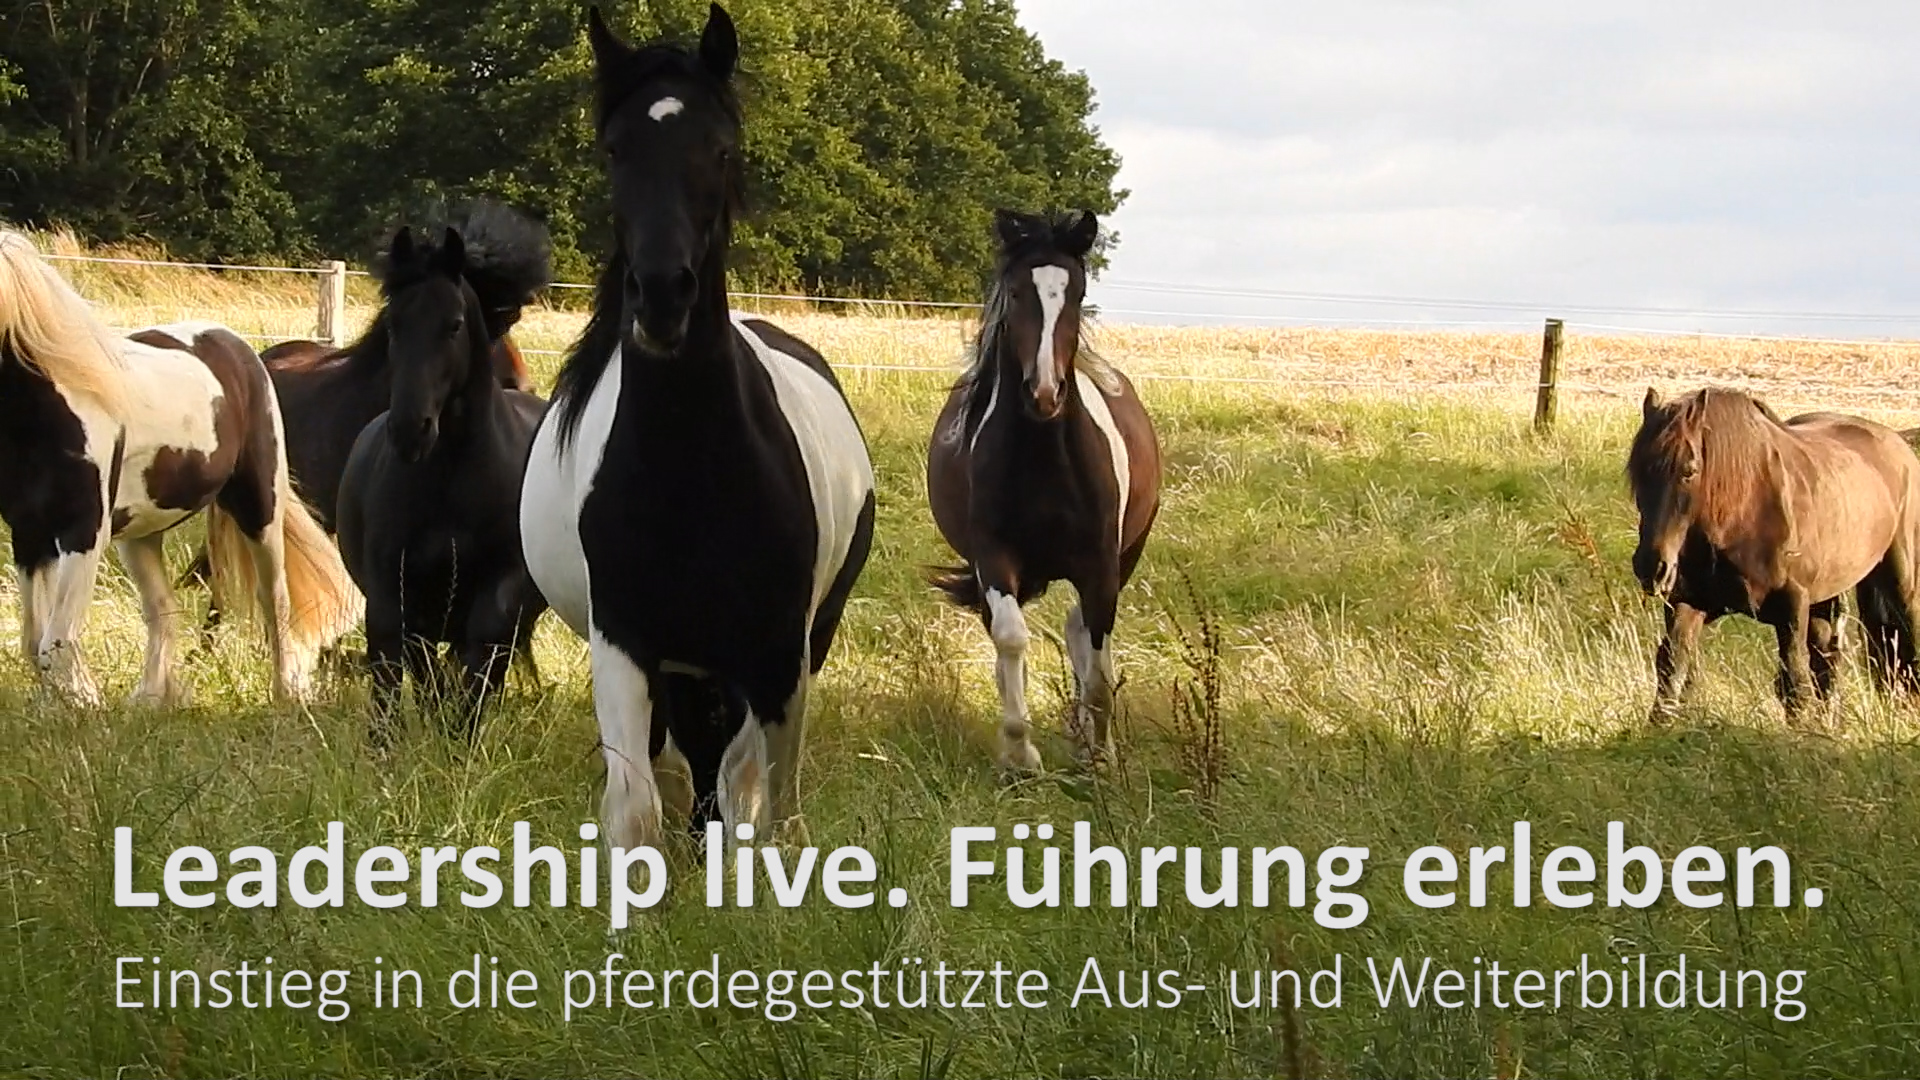 Leadership live - FÃ¼hrung erleben. Ein Seminar mit Pferden.